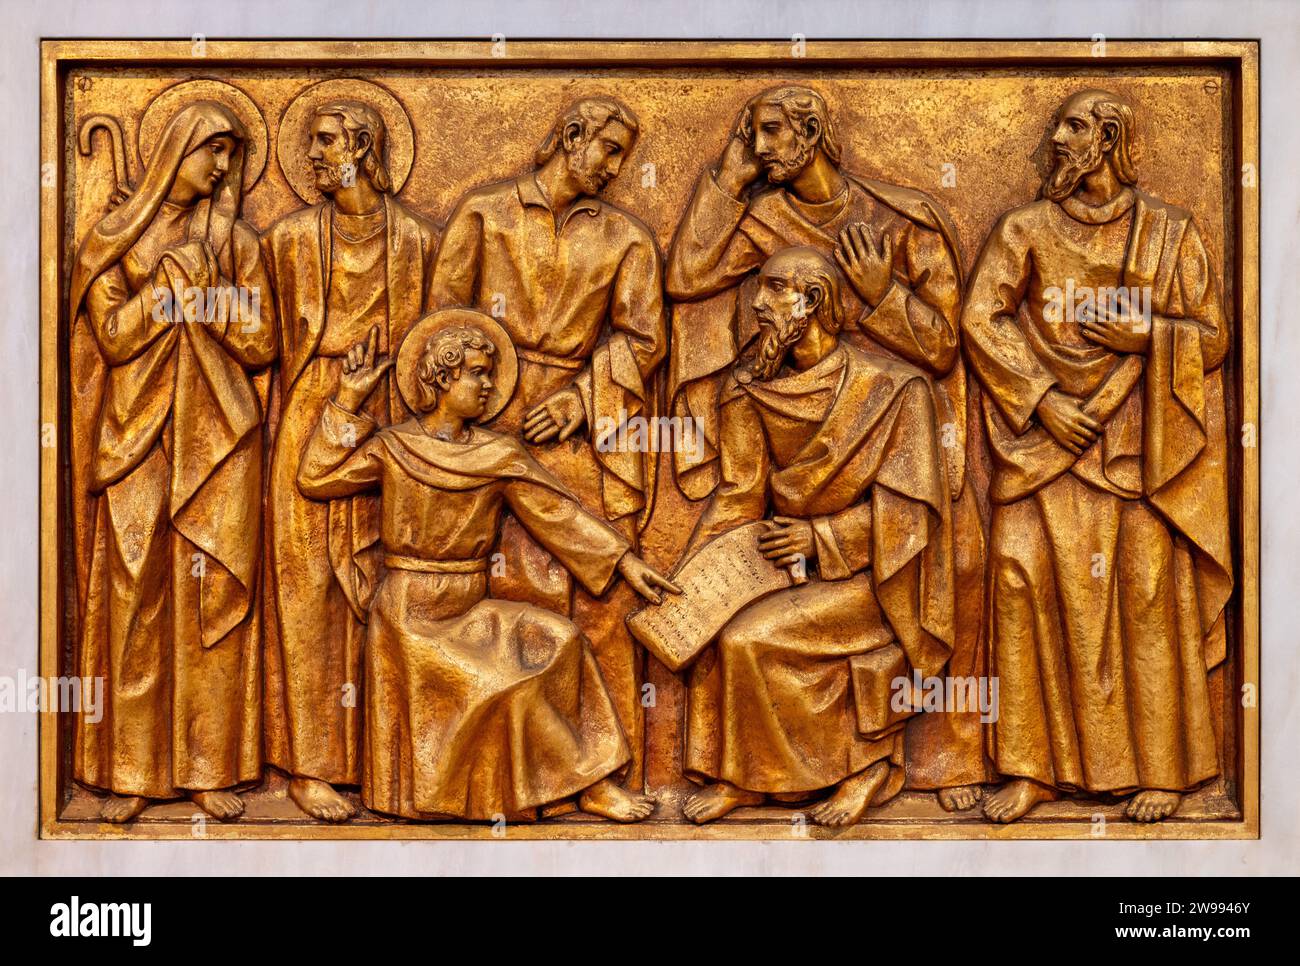 Il ritrovamento di Gesù nel Tempio – Quinto mistero Gioioso. Una scultura in rilievo nella Basilica di nostra Signora del Rosario di Fatima a Fatima, Portogallo. Foto Stock